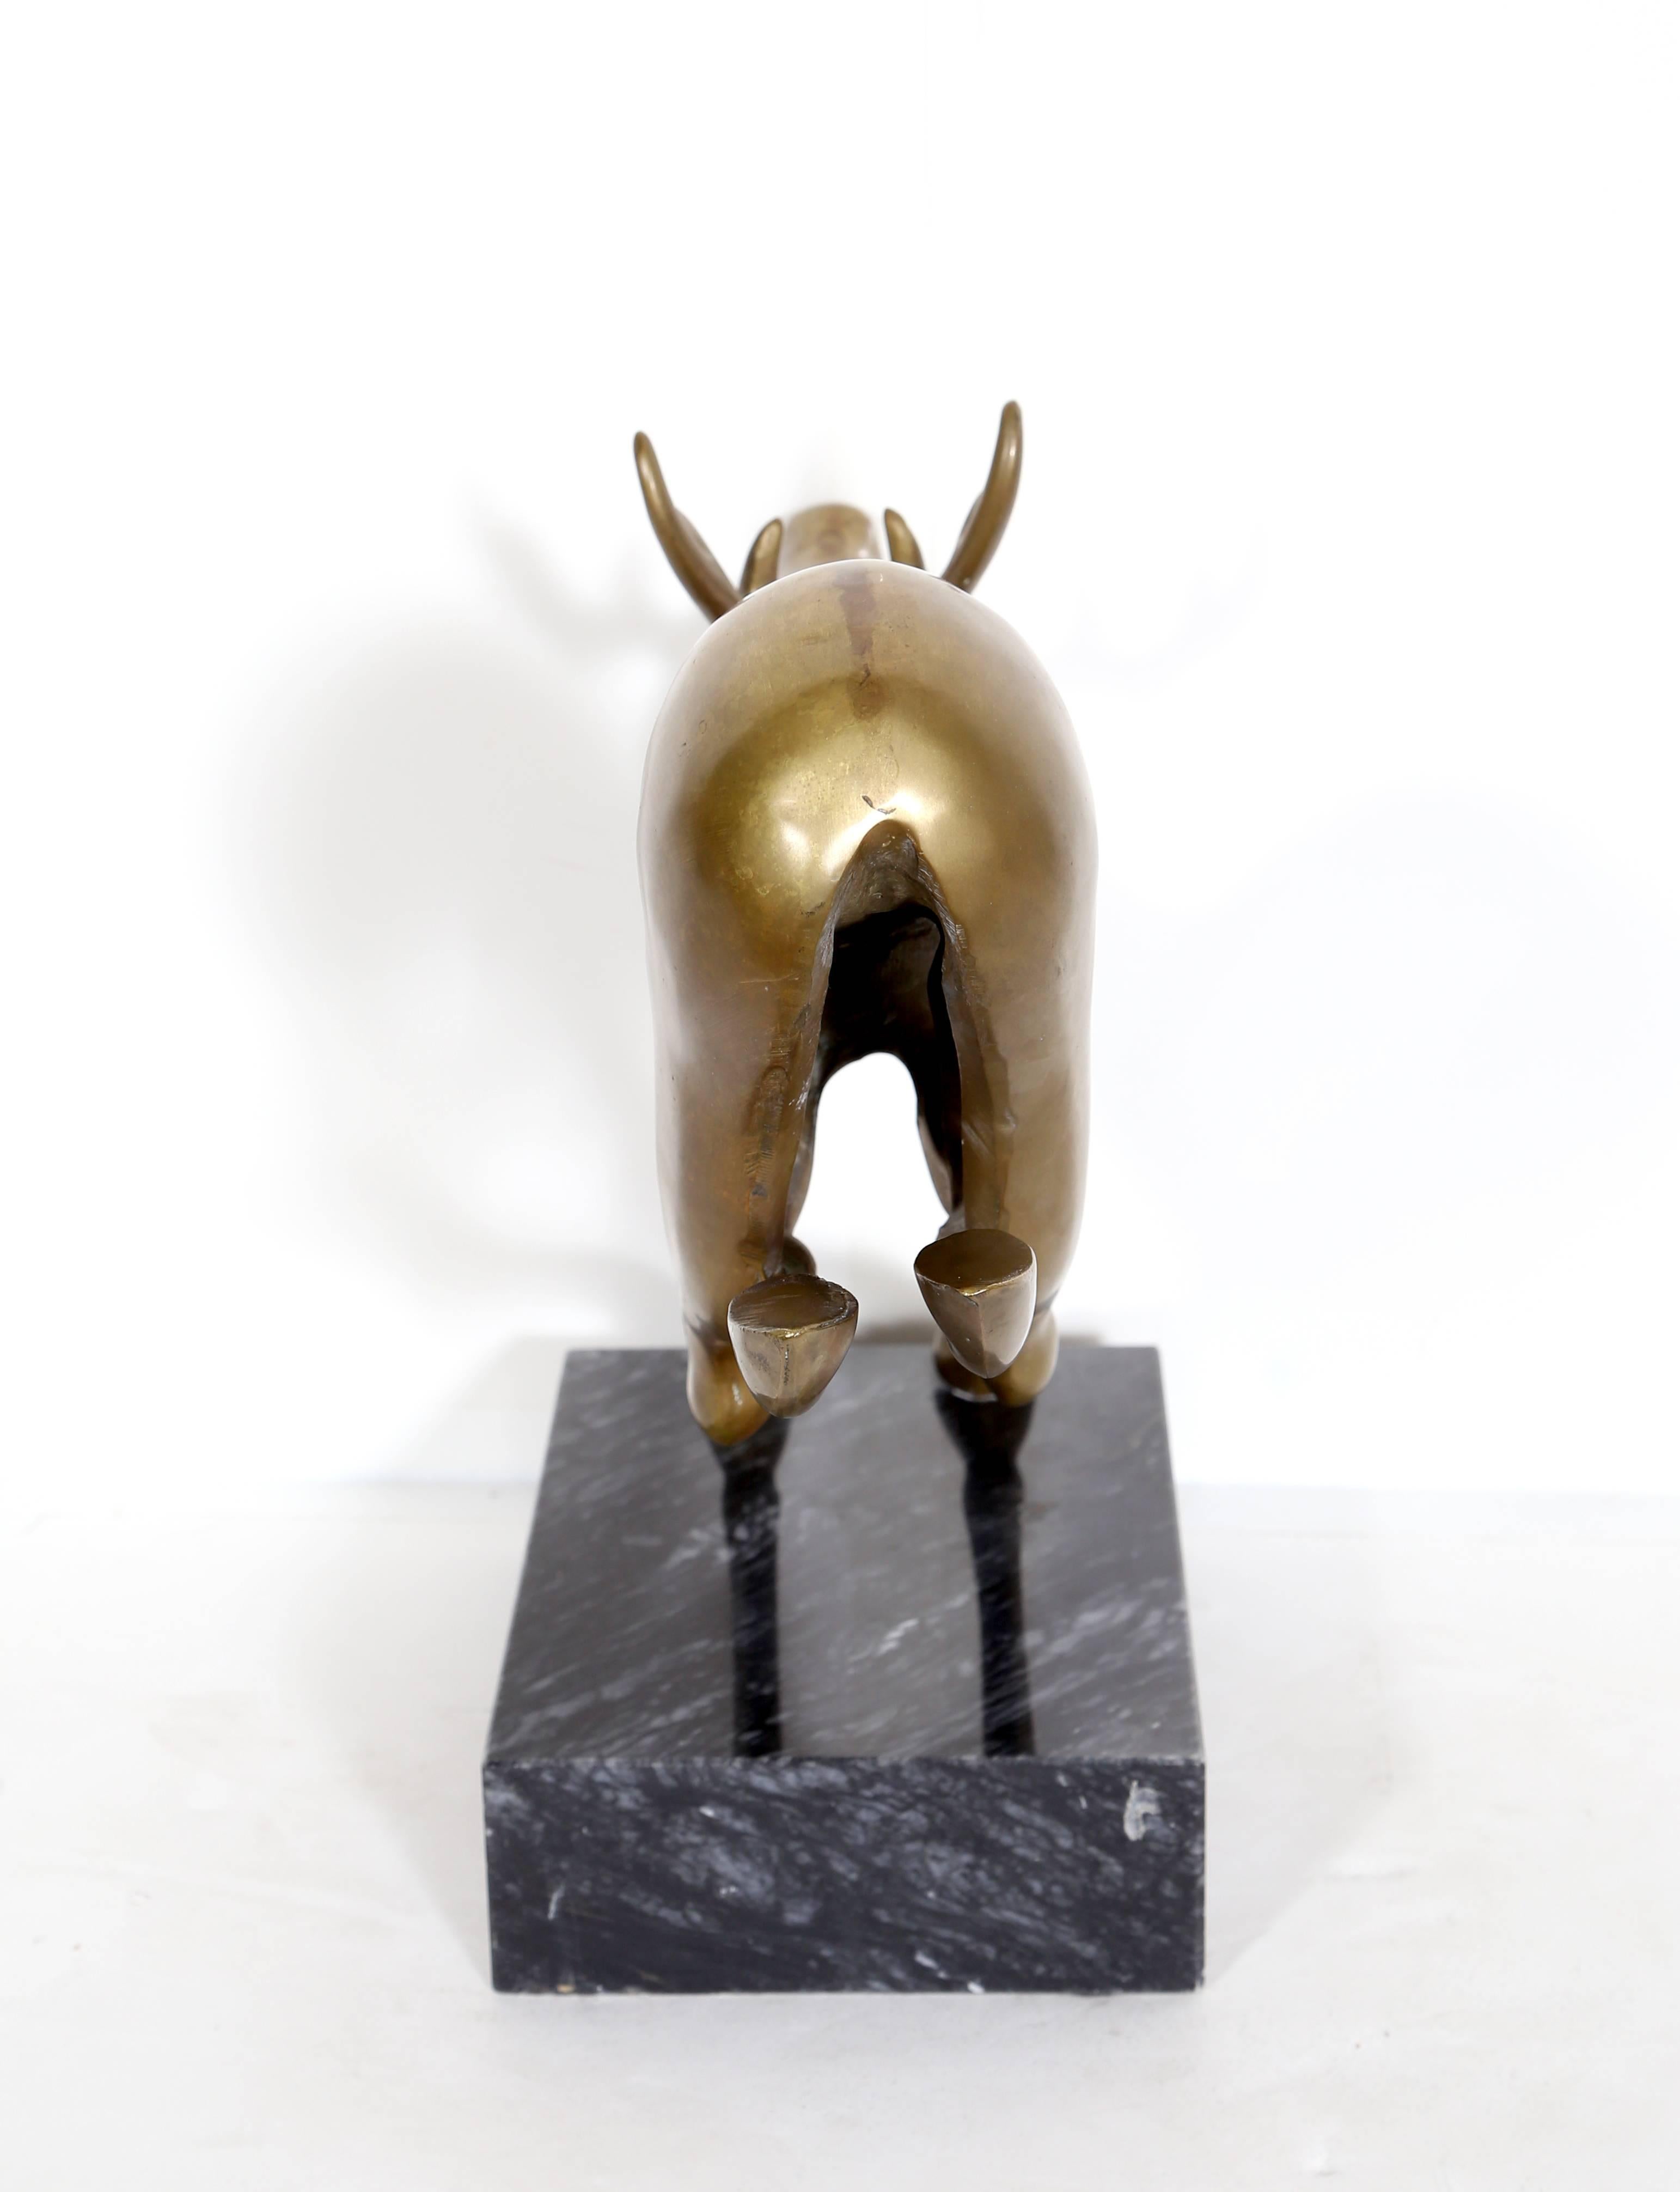 Artistics : Mattakitkosol Somchai
Titre : Renne d'or
Année : Circa 1970
Moyen : Sculpture en bronze montée sur un socle en marbre
Taille : 10.5  x 15.5  x 4 in. (26.67  x 39.37  x 10.16 cm)
Base : 9 x 6 x 2.25 pouces